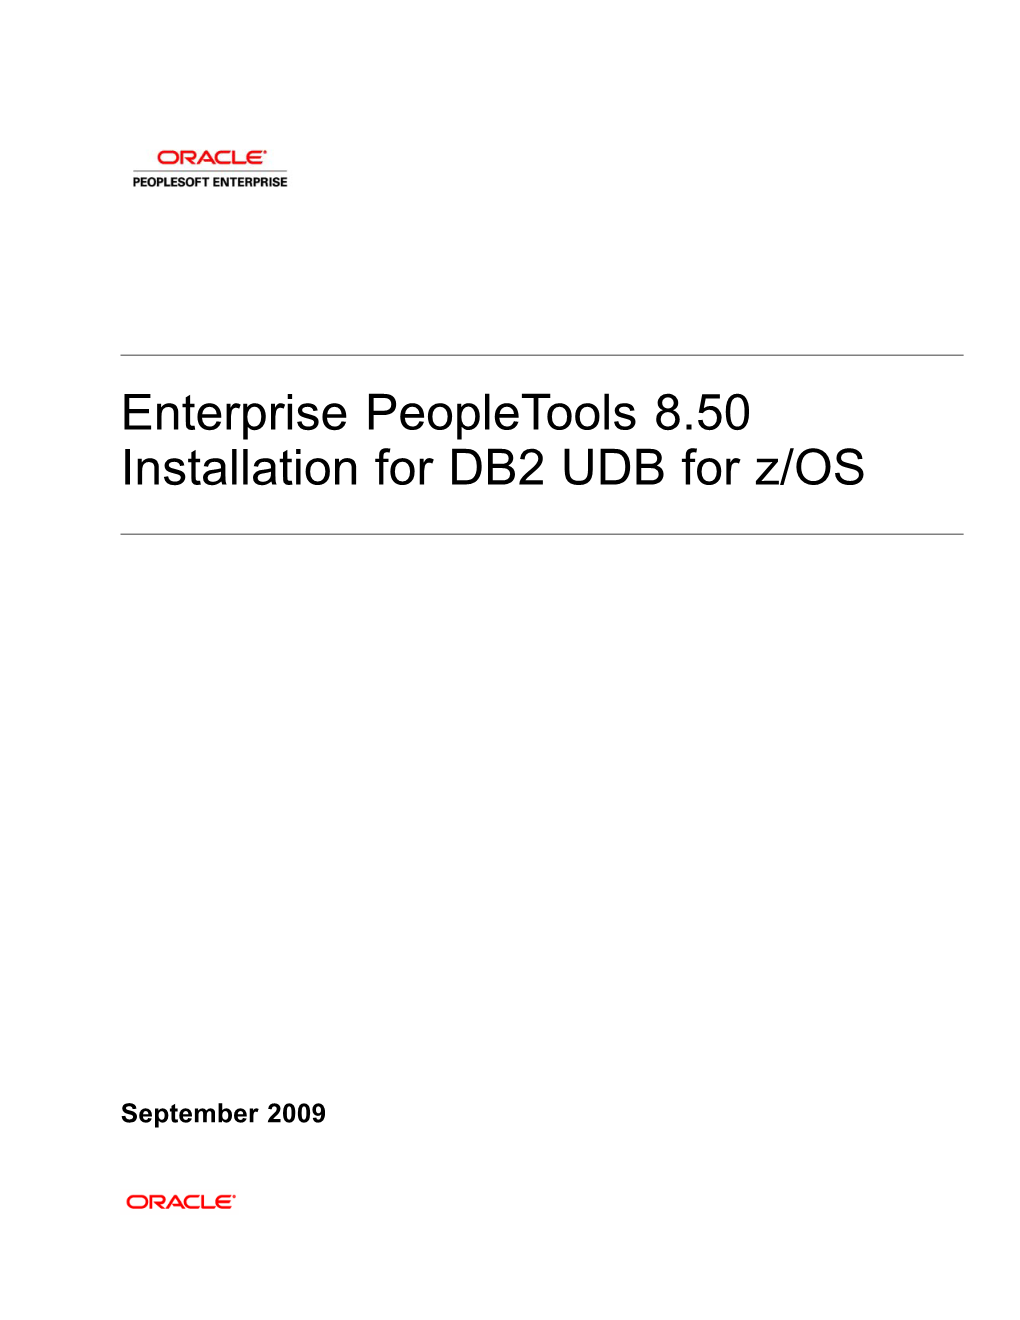 Enterprise Peopletools 8.50 Installation for DB2 UDB for Z/OS